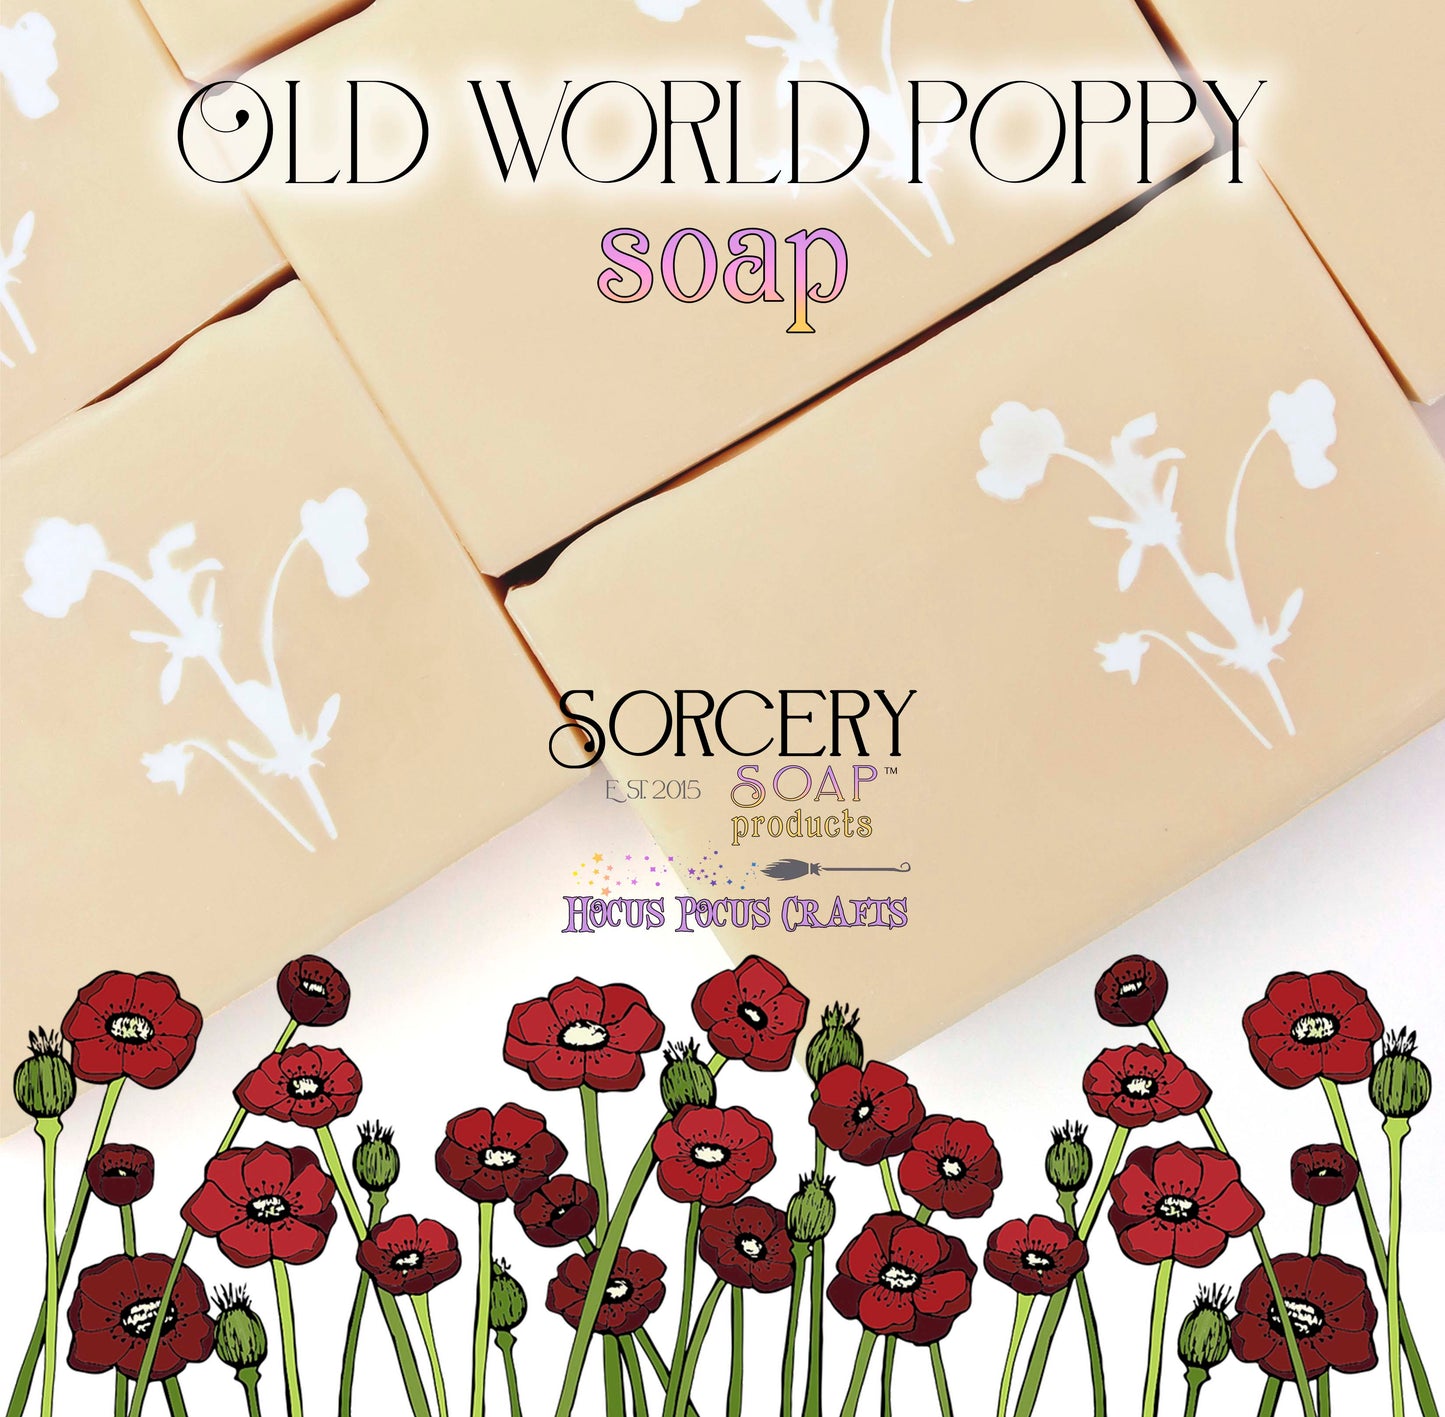 Old World Poppy Soap